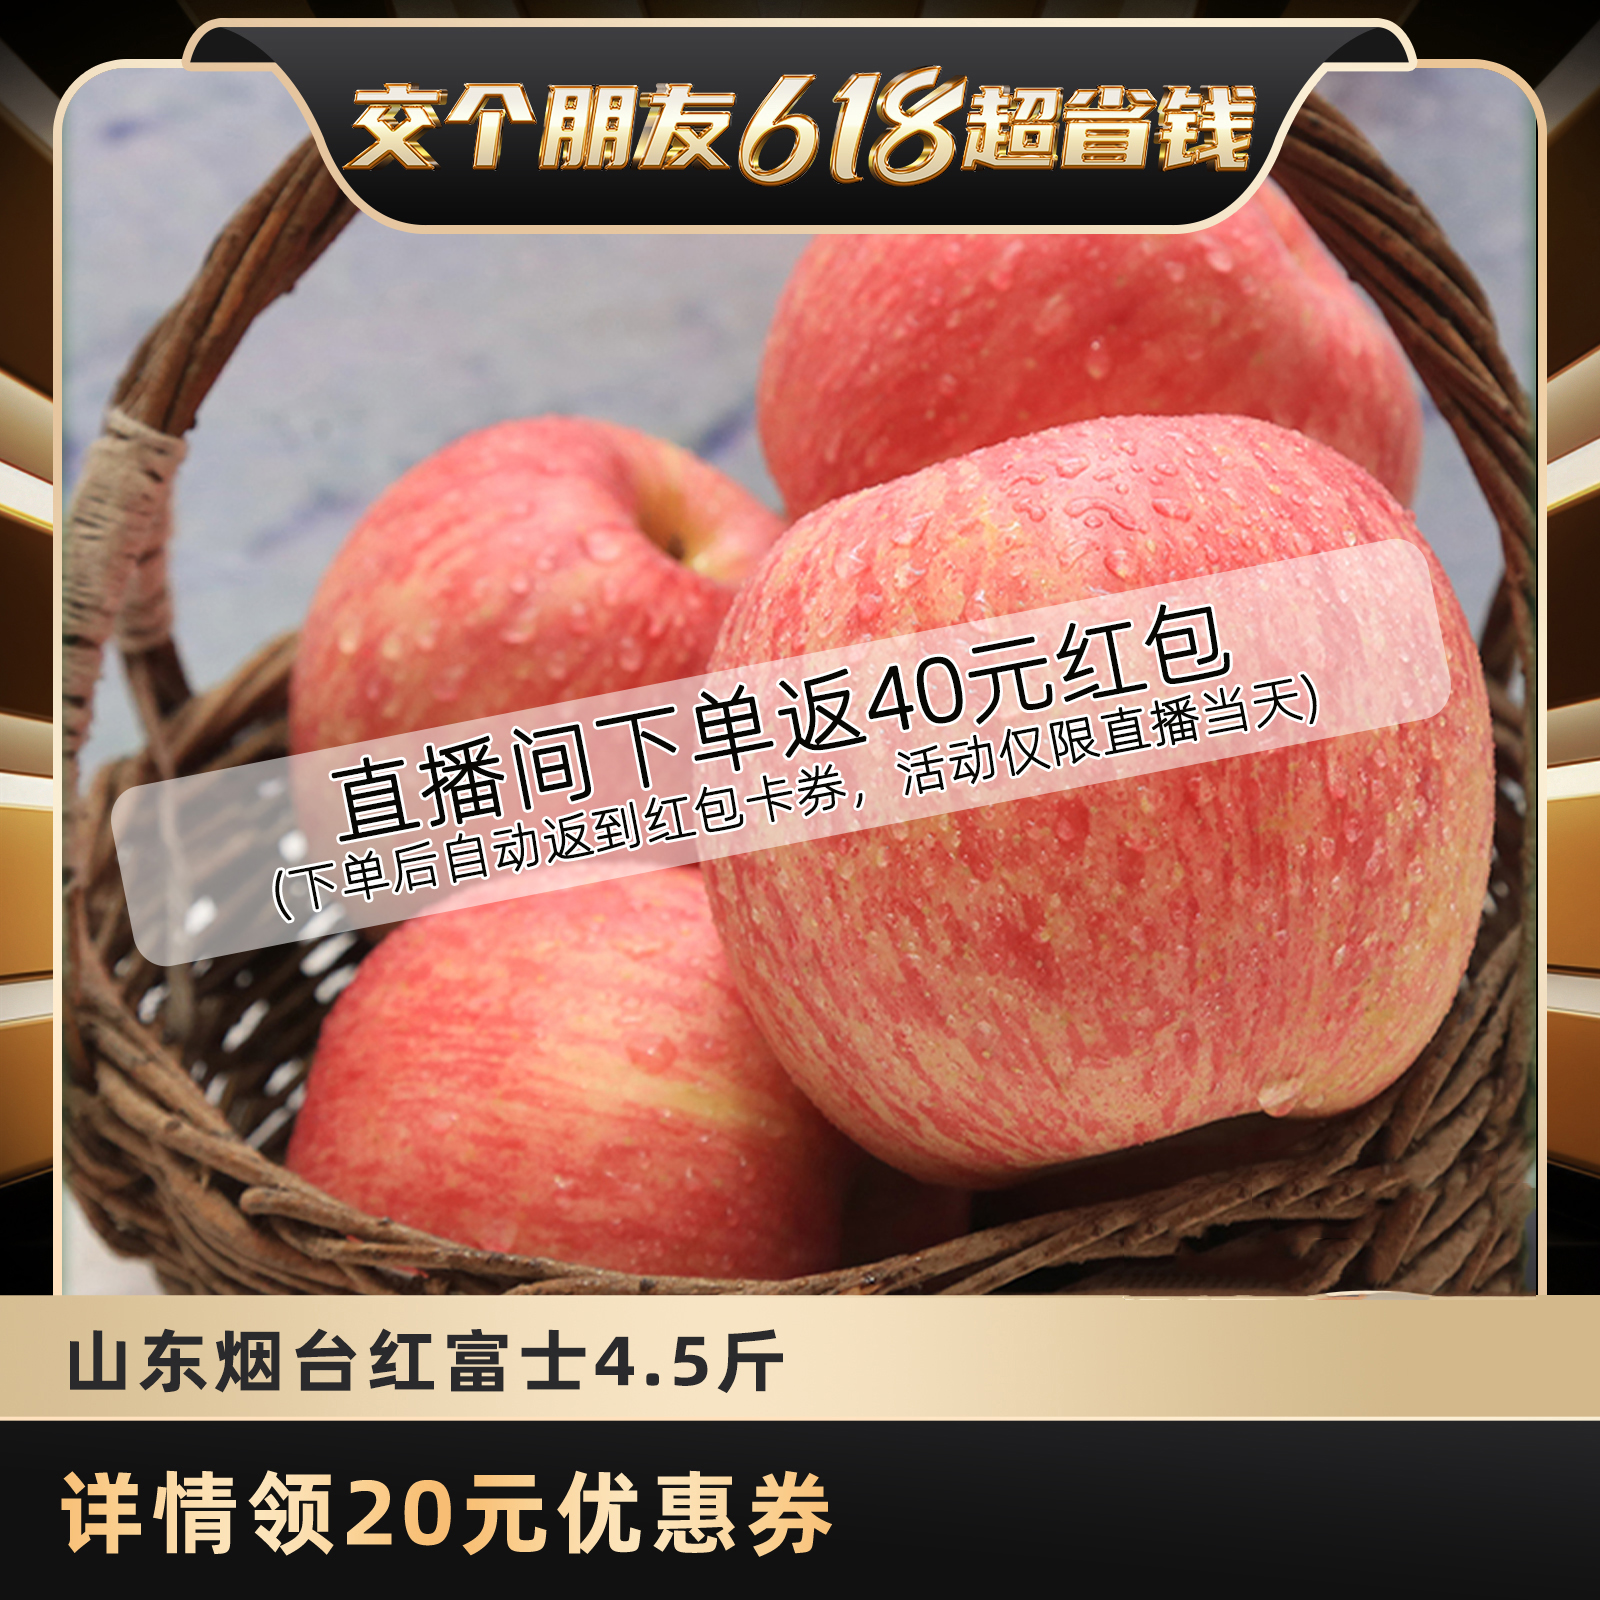 【交个朋友618现货开抢！】山东烟台苹果栖霞红富士新鲜水果4.5斤